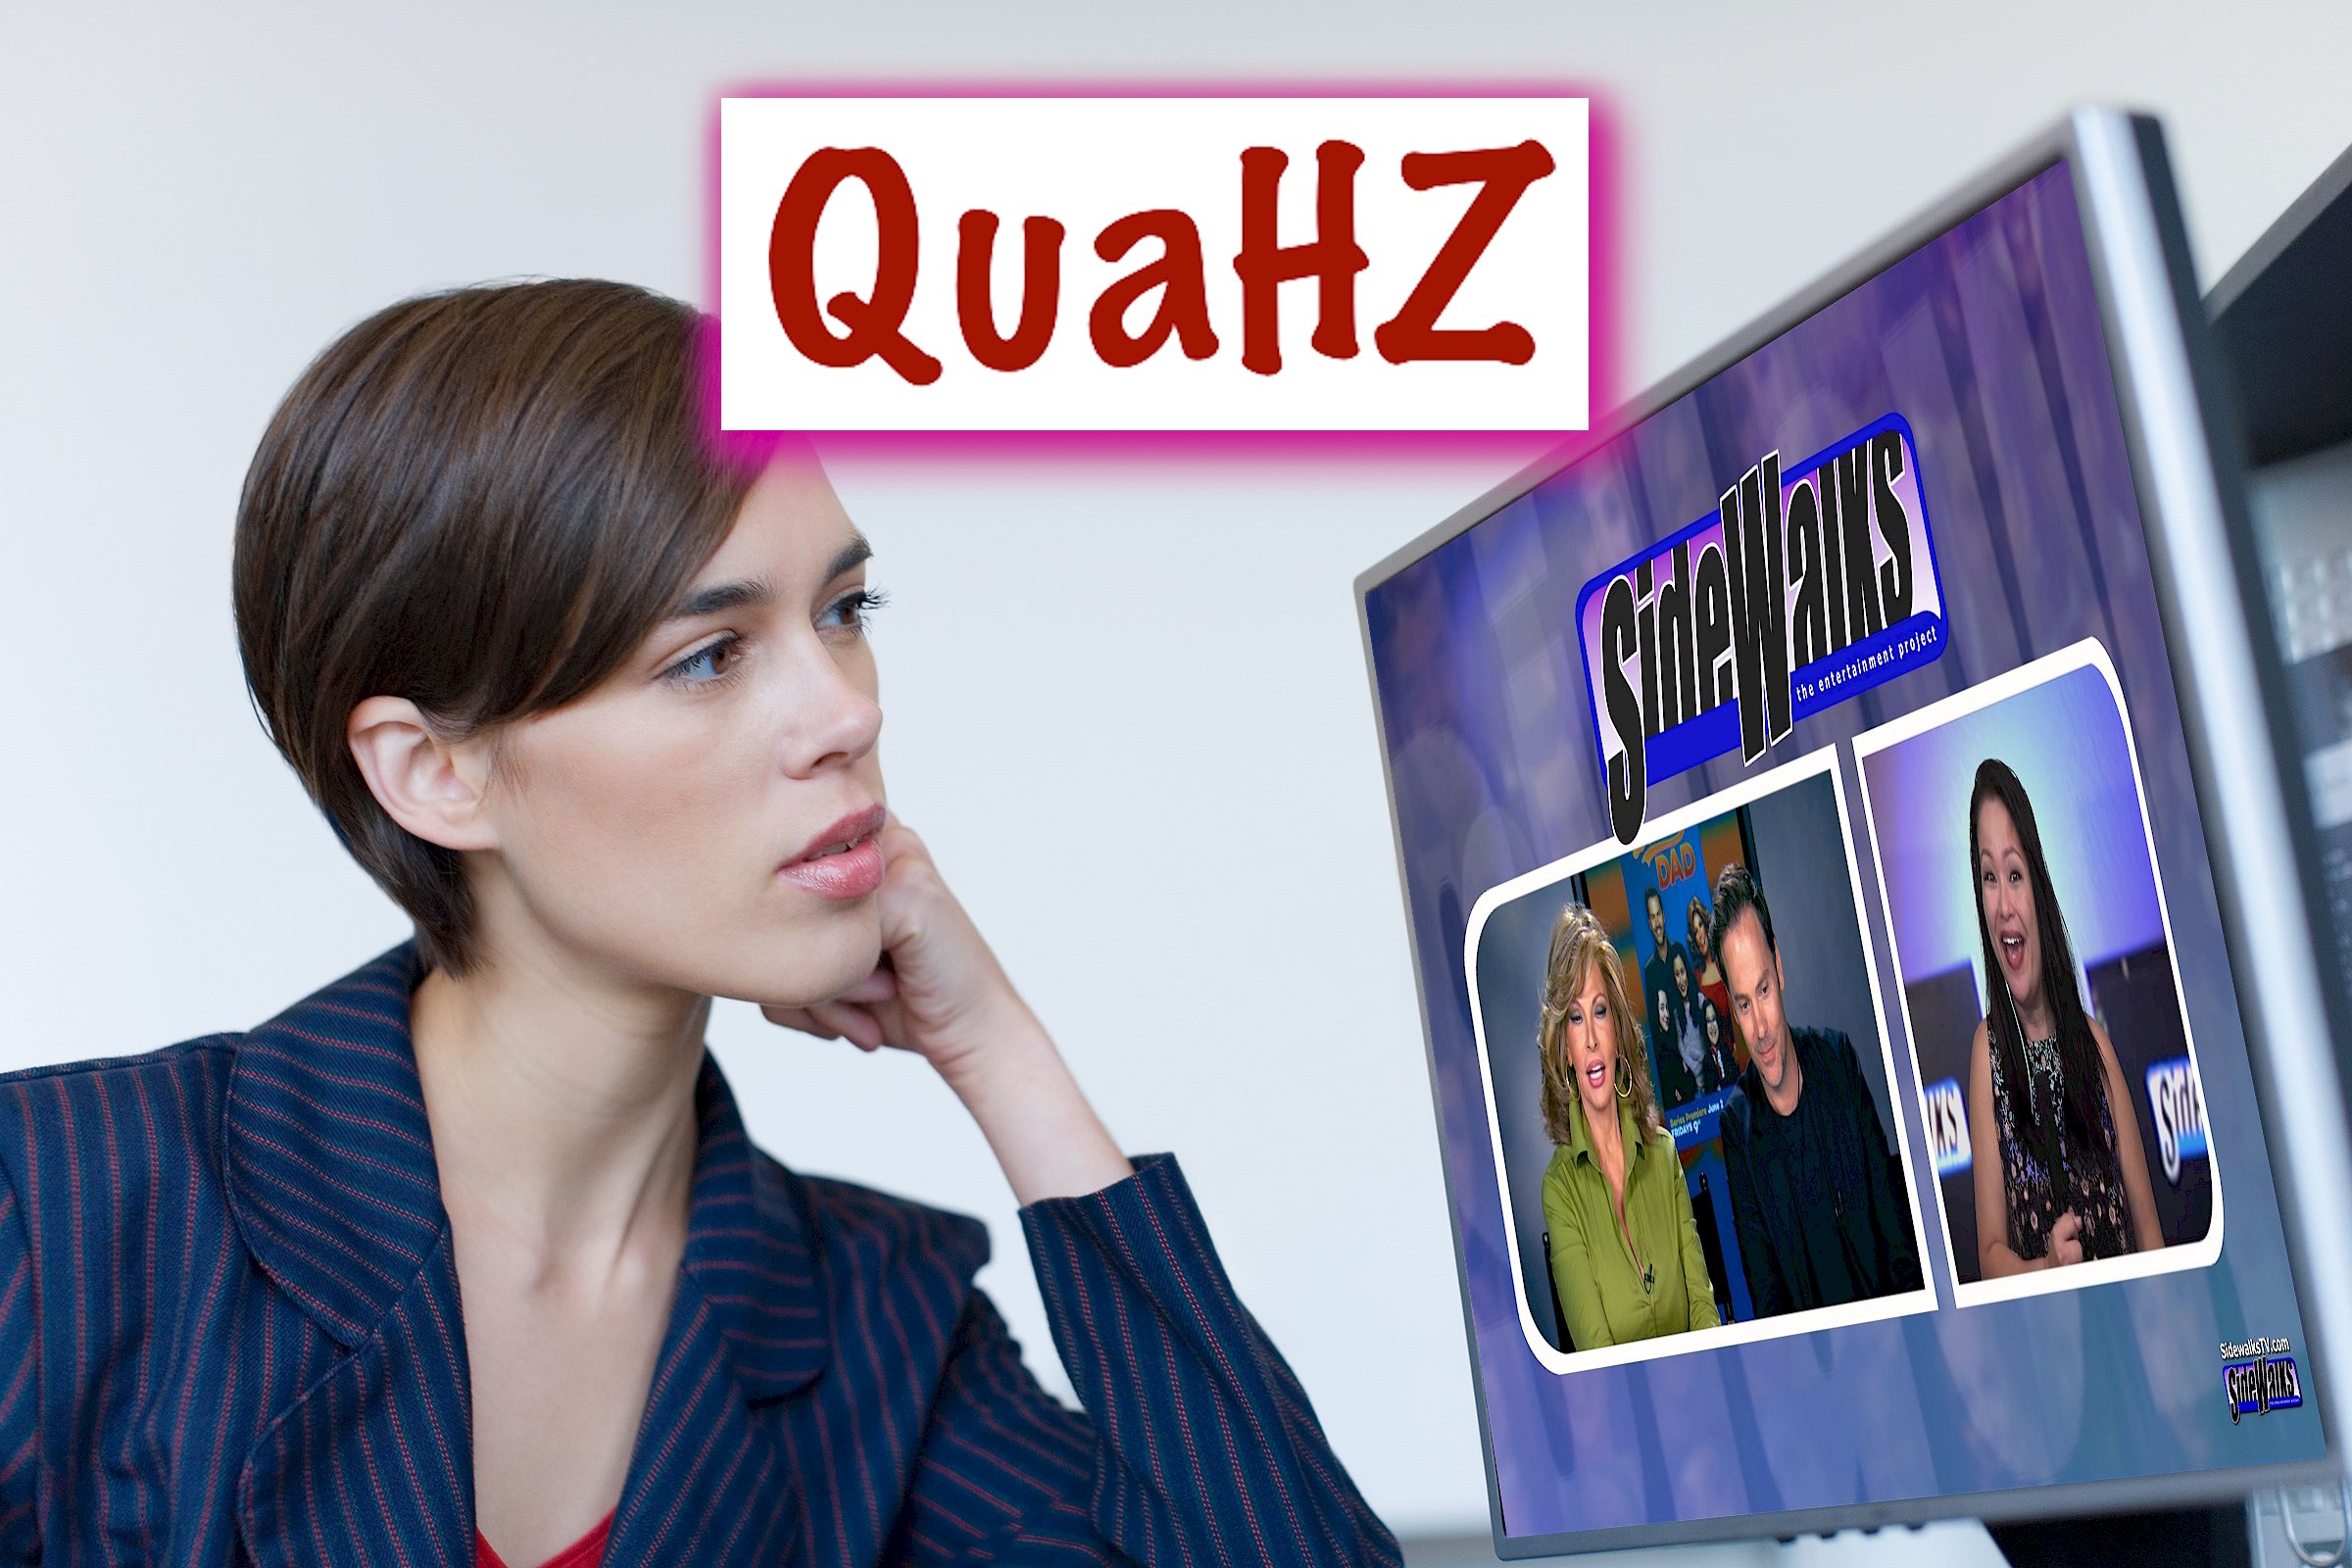 QuaHZ TV